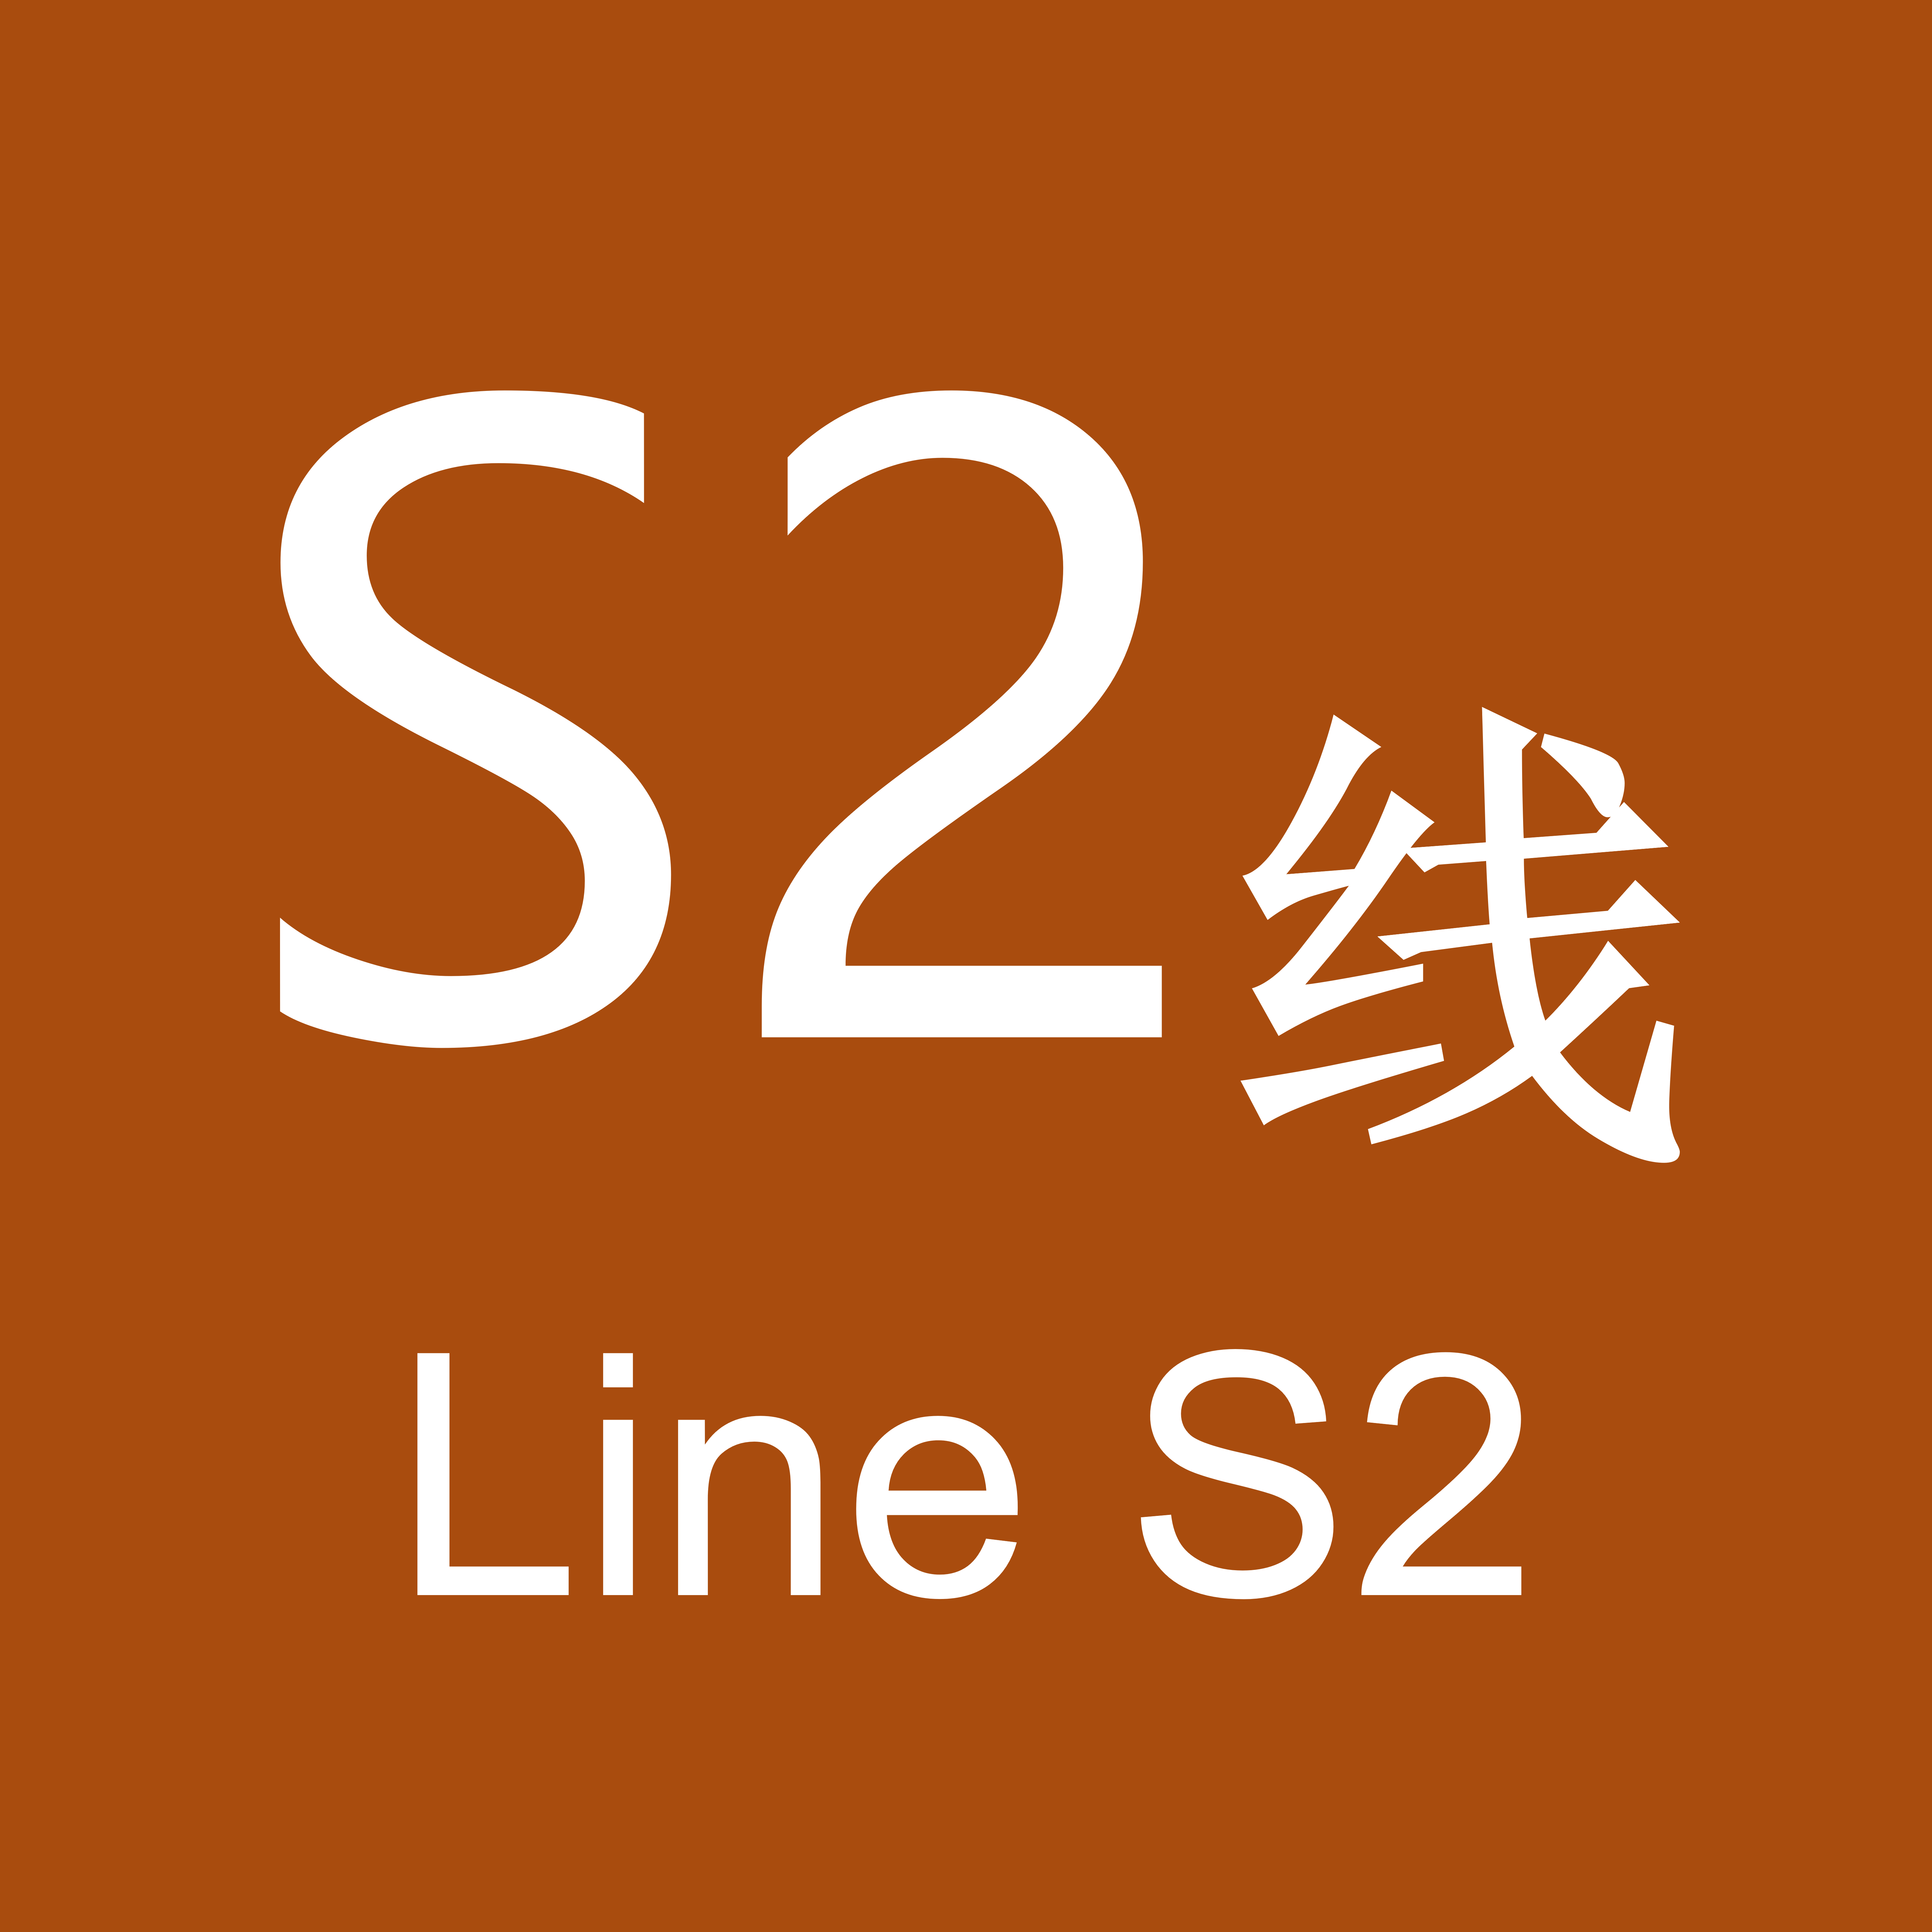 溫州軌道交通S2線(溫州市域鐵路S2線)